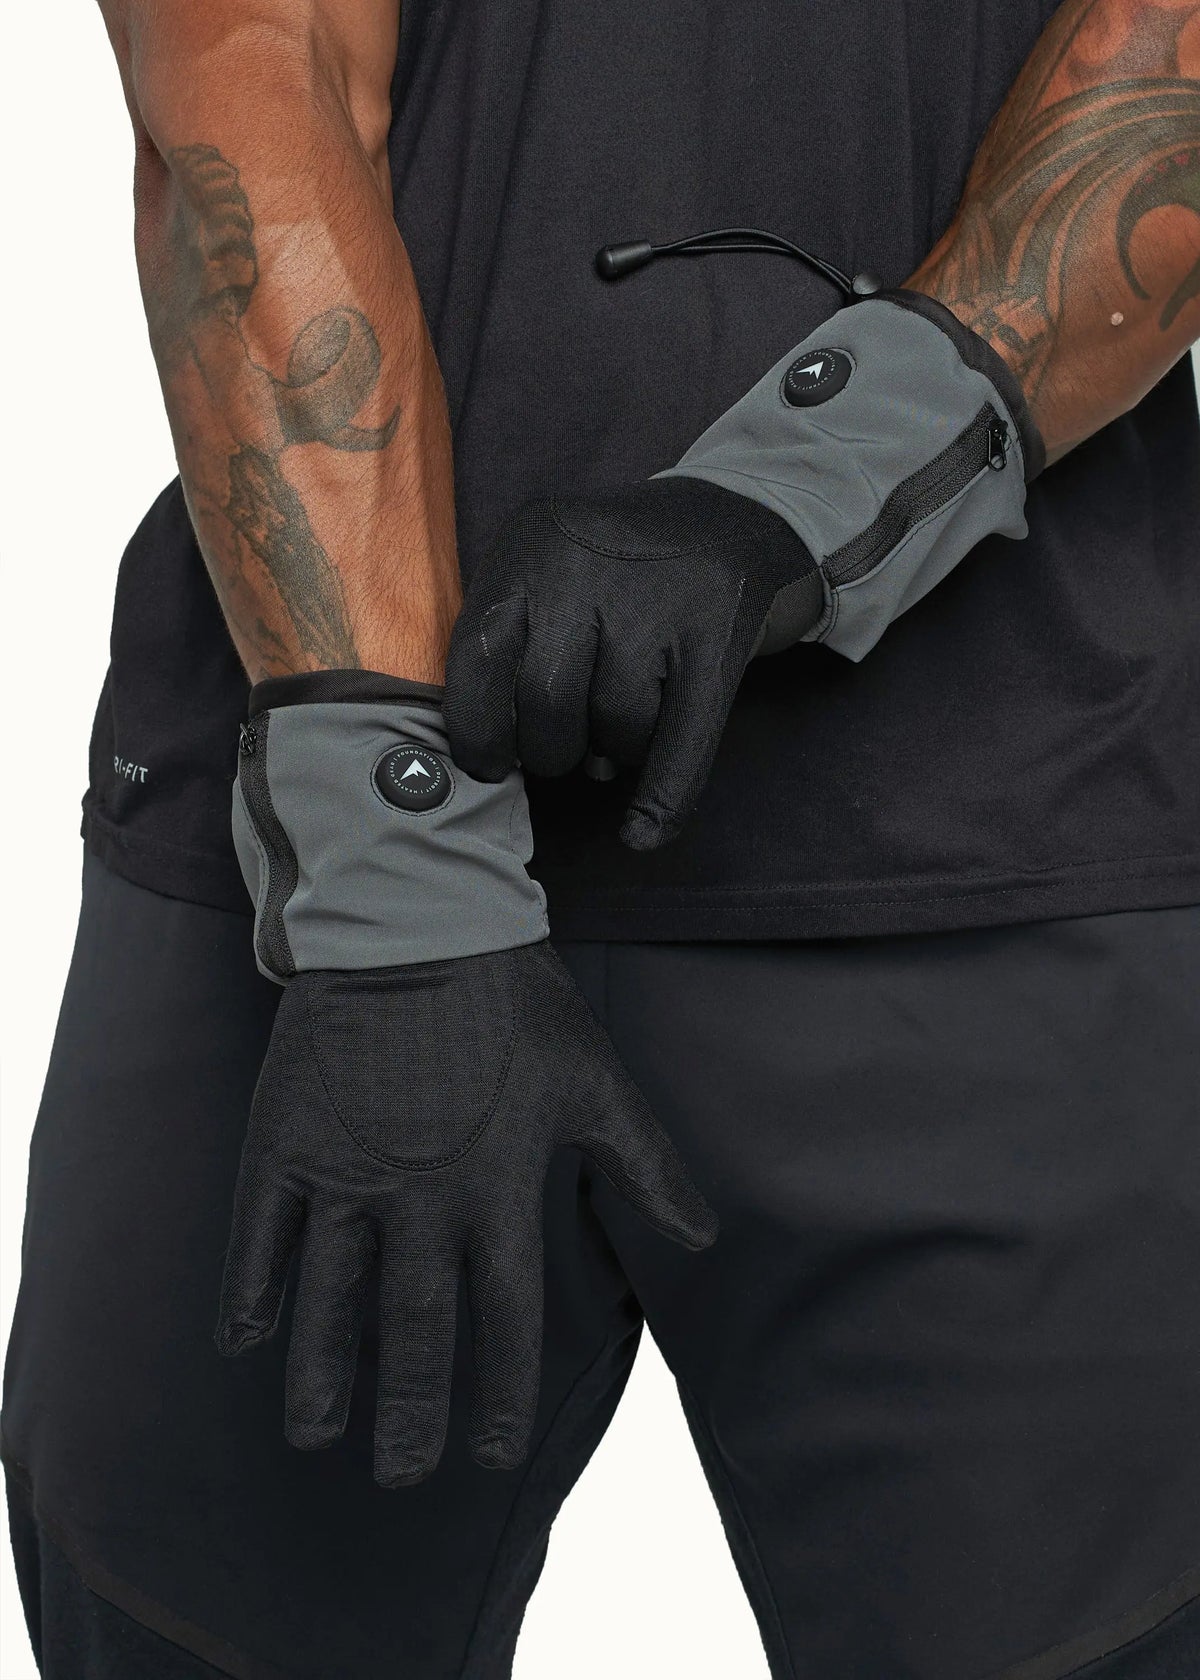 FNDN Skin-Fit 3.7V Liner Glove